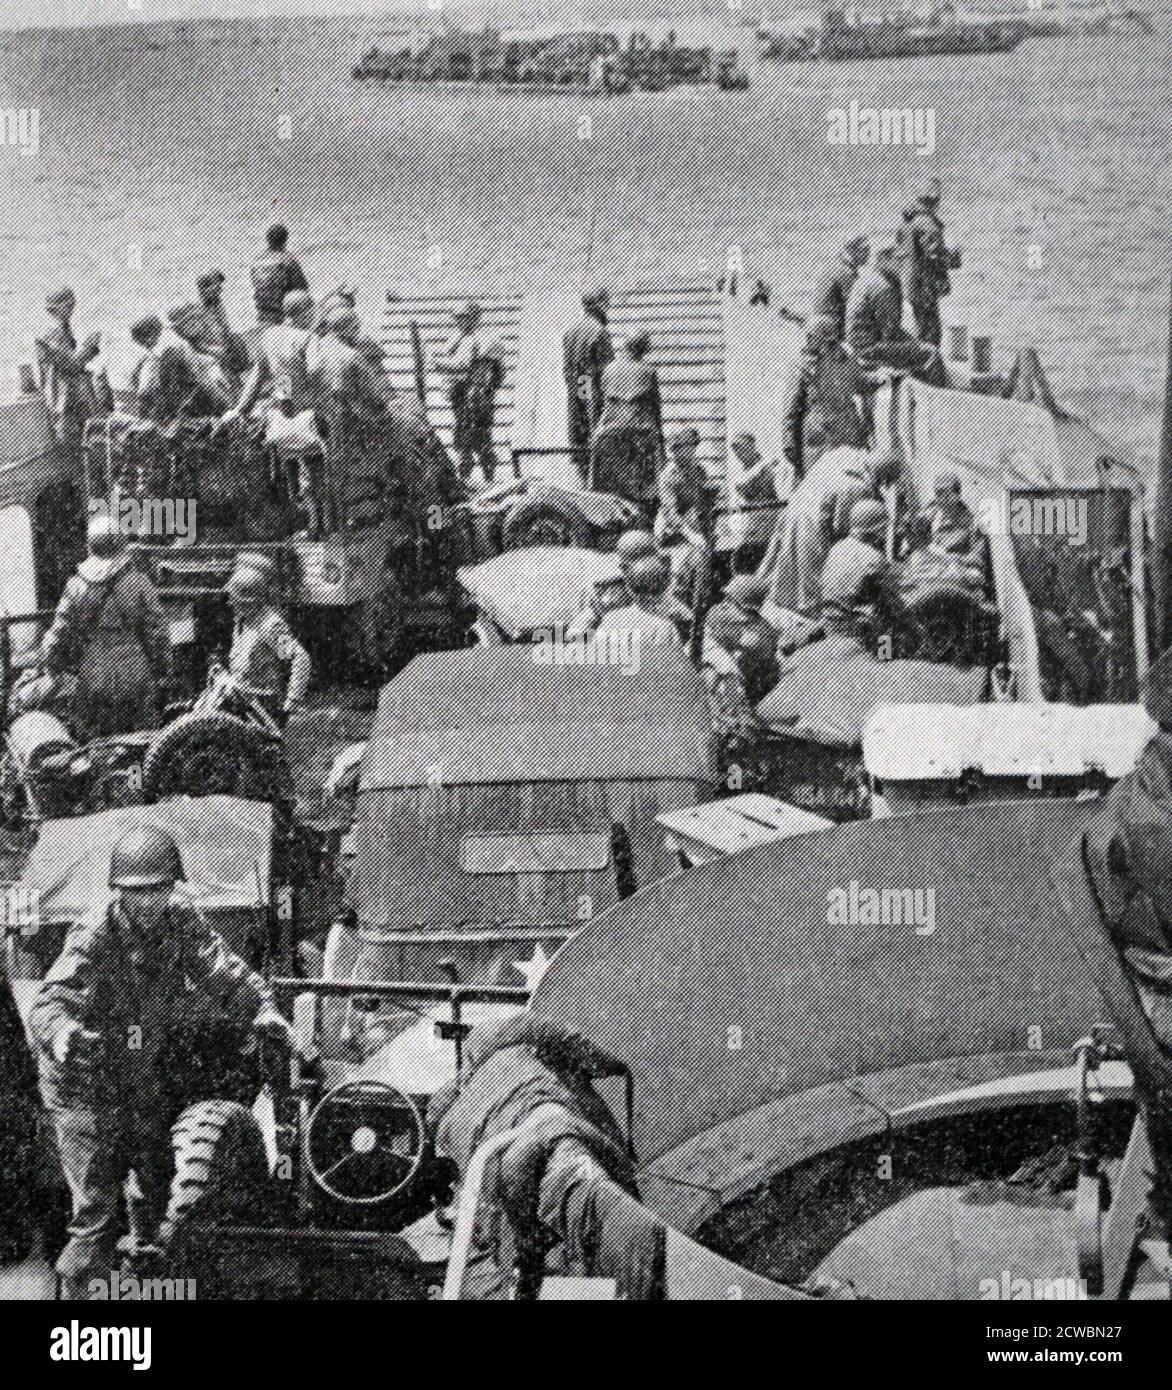 Photographie en noir et blanc de la Seconde Guerre mondiale (1939-1945) montrant des images de l'invasion de la Normandie par les alliés en mer le jour J, 6 juin 1944; arrivée de renforts américains. Banque D'Images